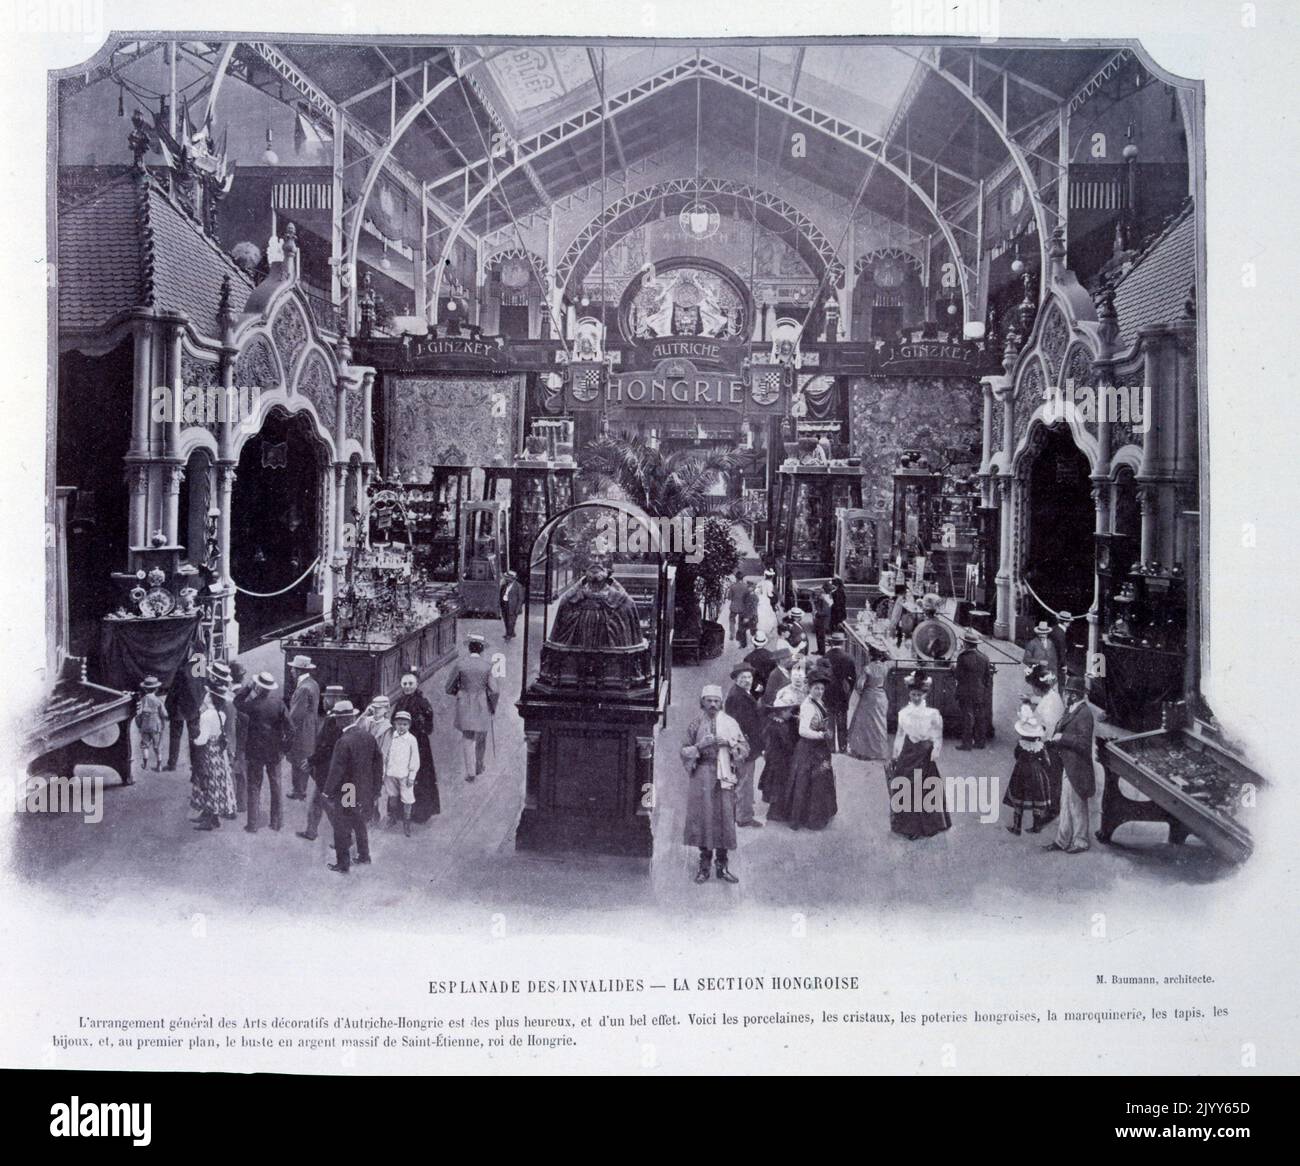 Esposizione Universelle (Fiera Mondiale) Parigi, 1900; fotografia in bianco e nero dell'interno della Galleria Ungherese di Les Invalides. Foto Stock